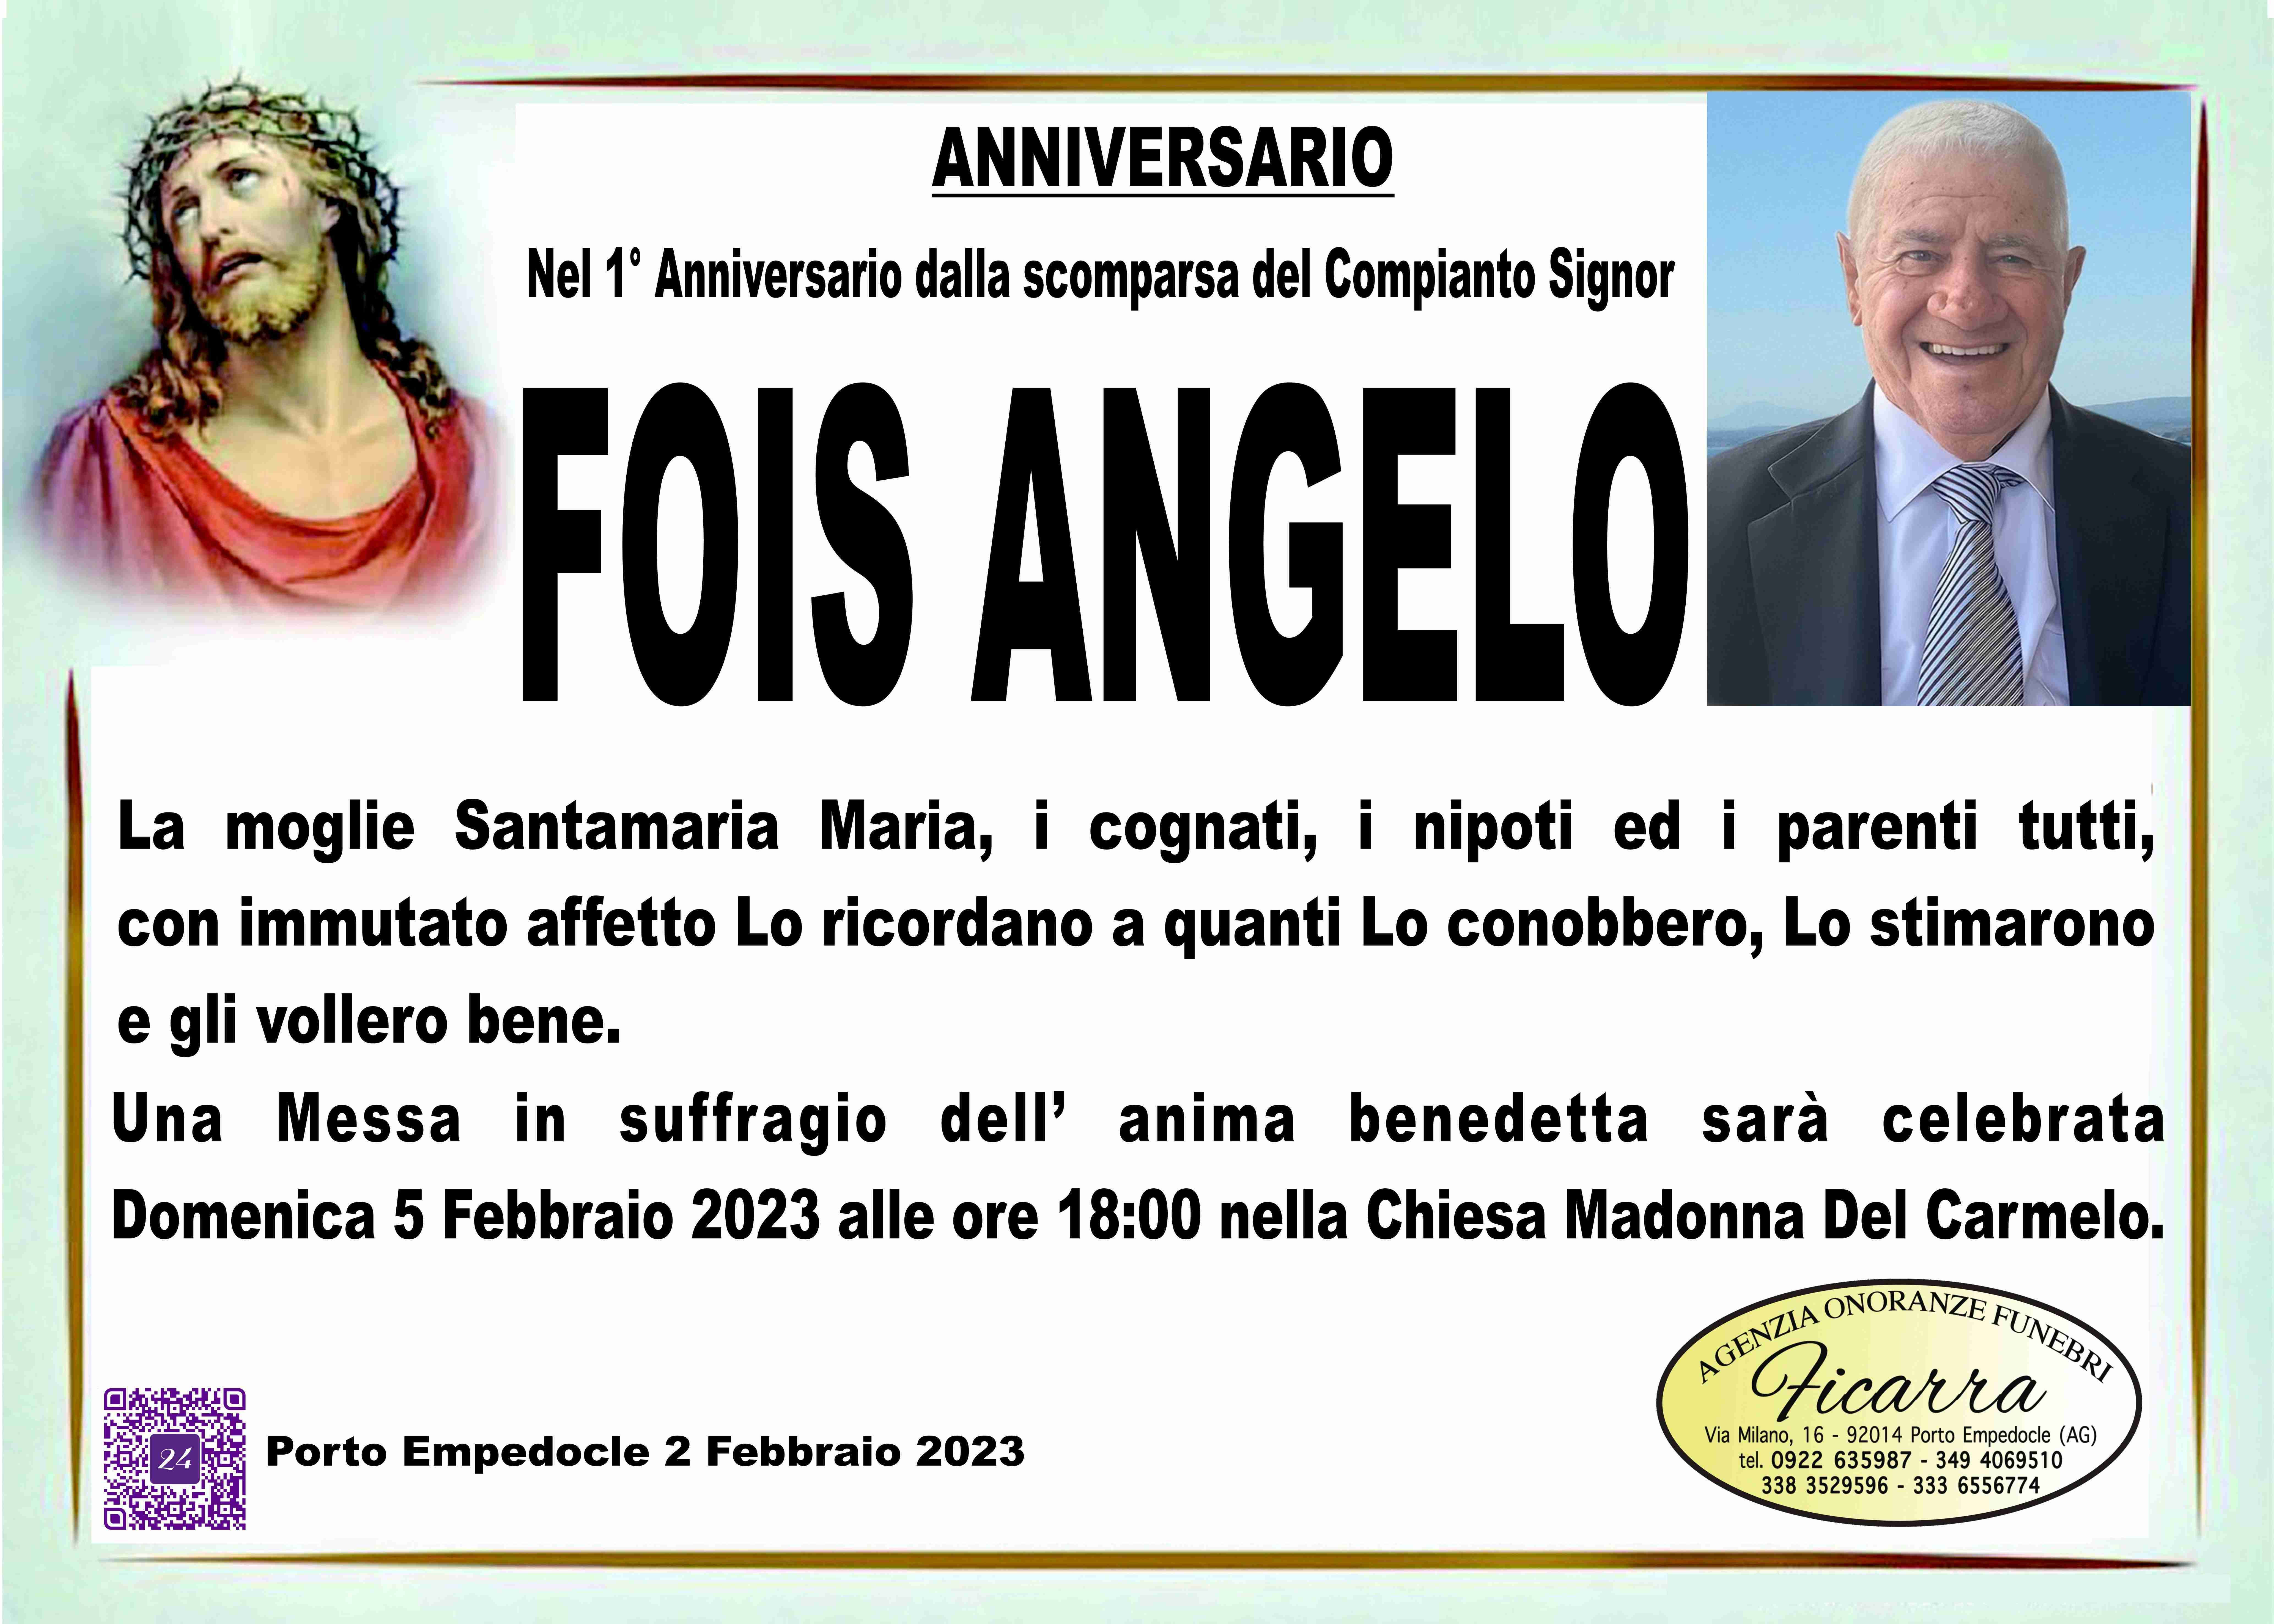 Angelo Fois